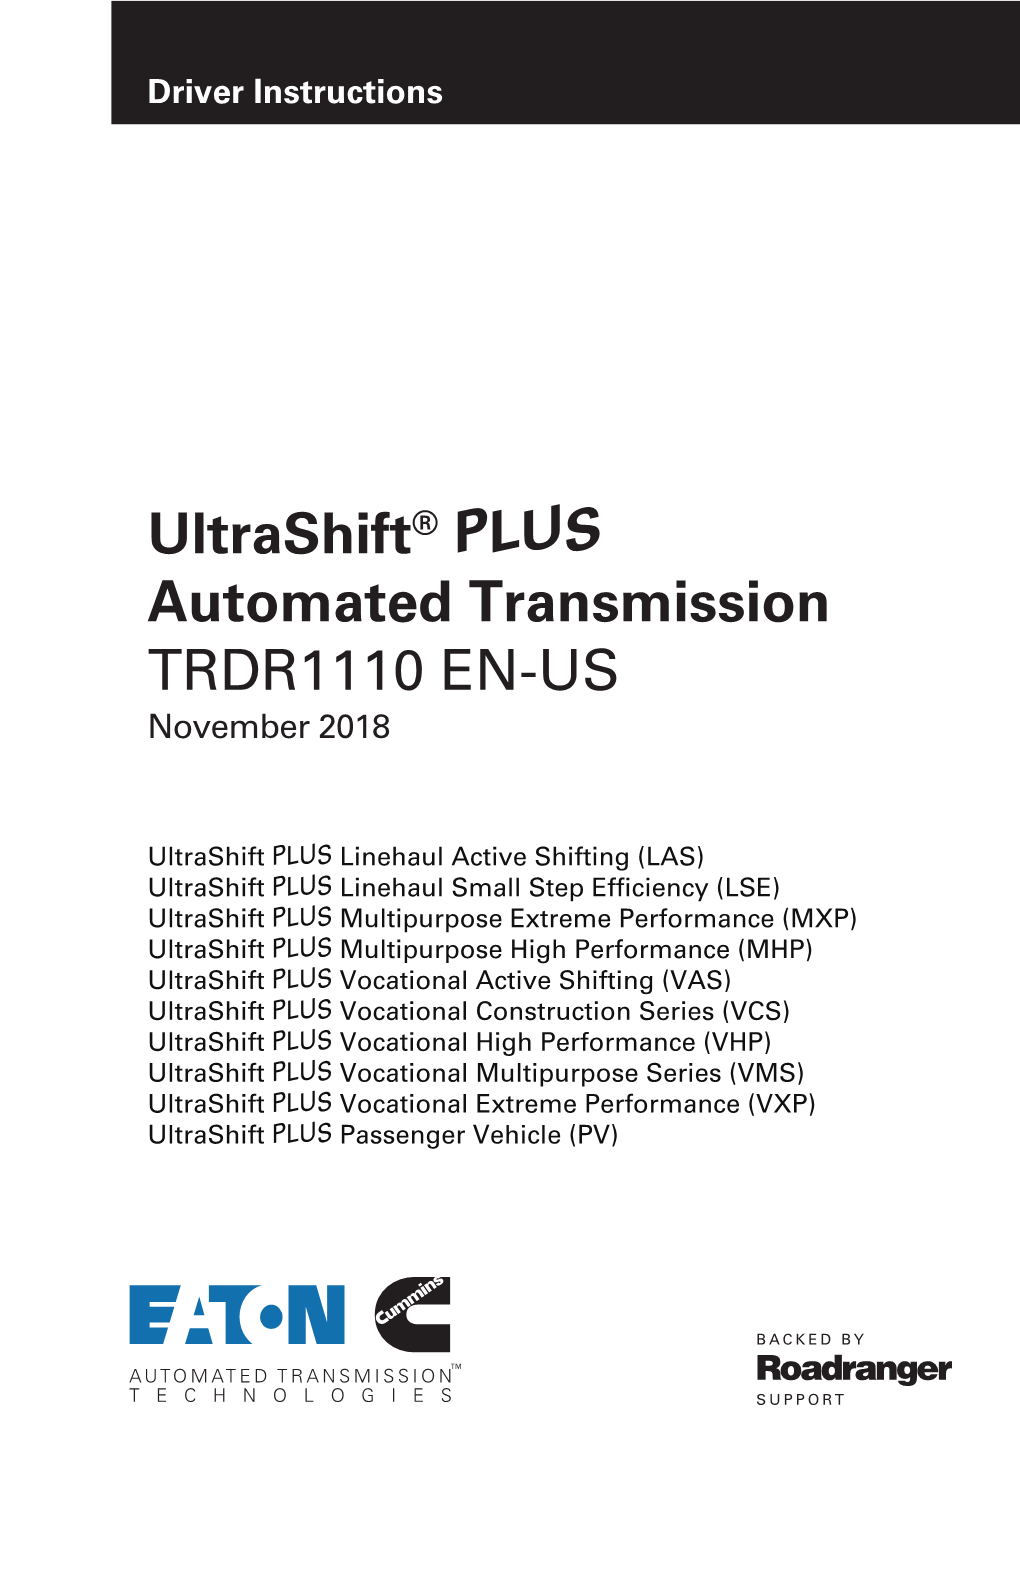 Ultrashift® PLUS Automated Transmission TRDR1110 EN-US November 2018